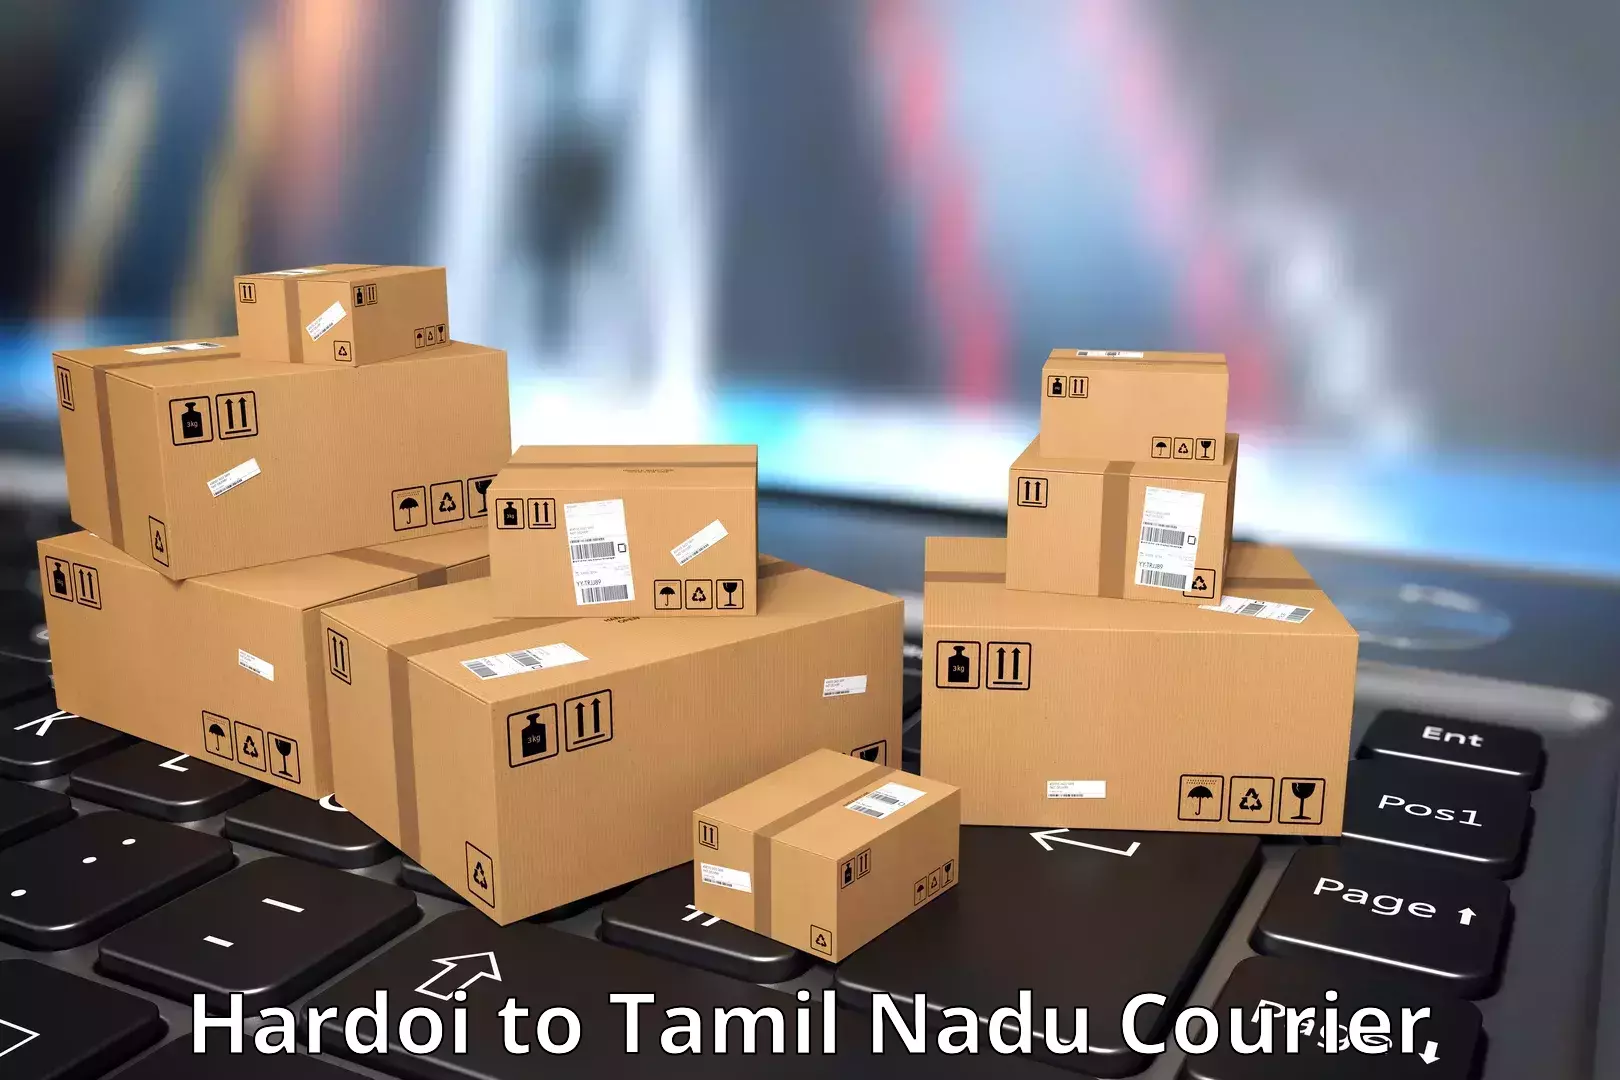 Courier service booking Hardoi to Thiruvadanai